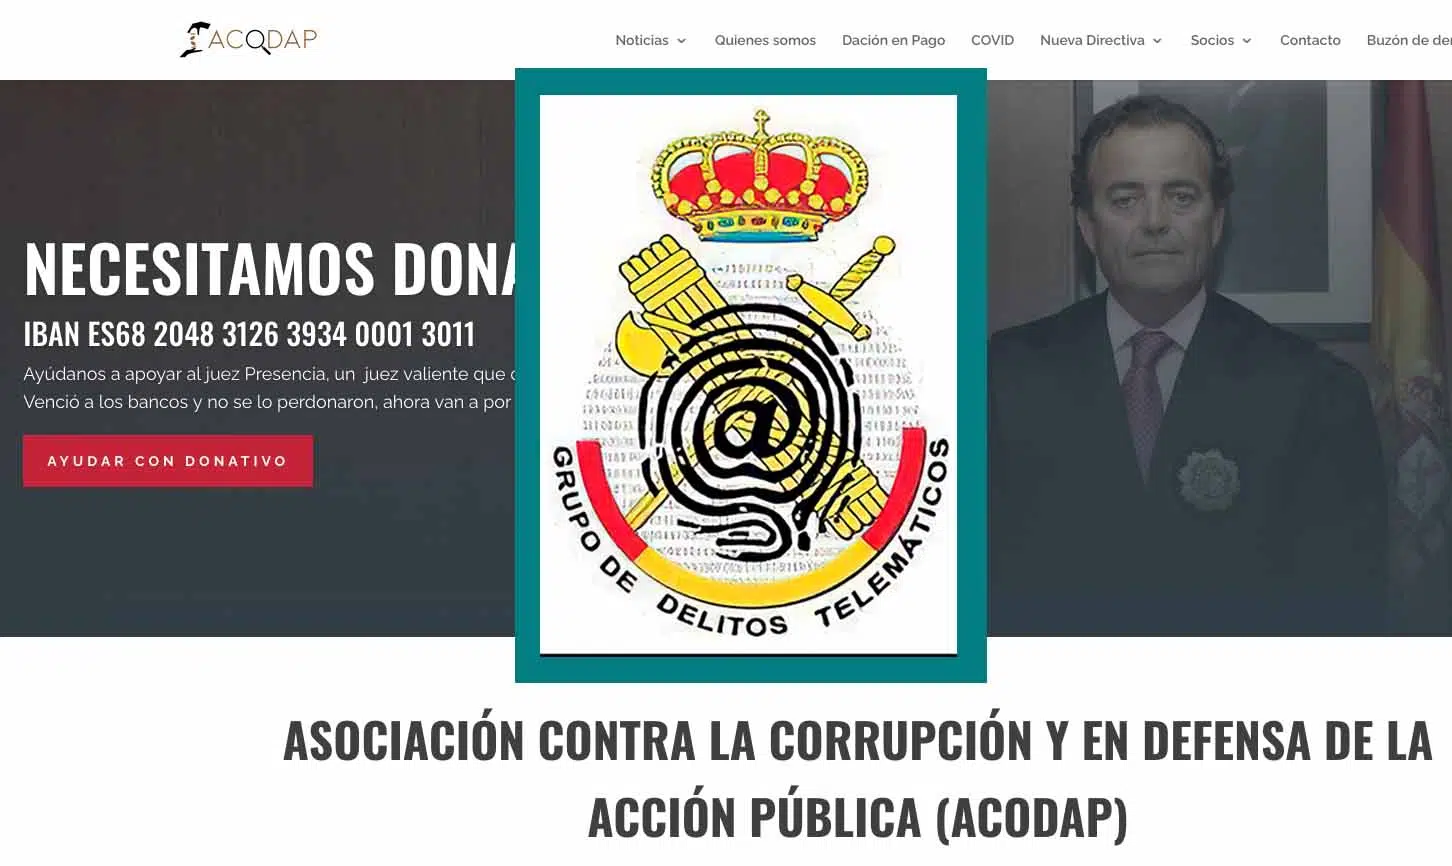 El magistrado Gadea ordena a los proveedores de Internet que bloqueen el dominio acodap.com, de Presencia